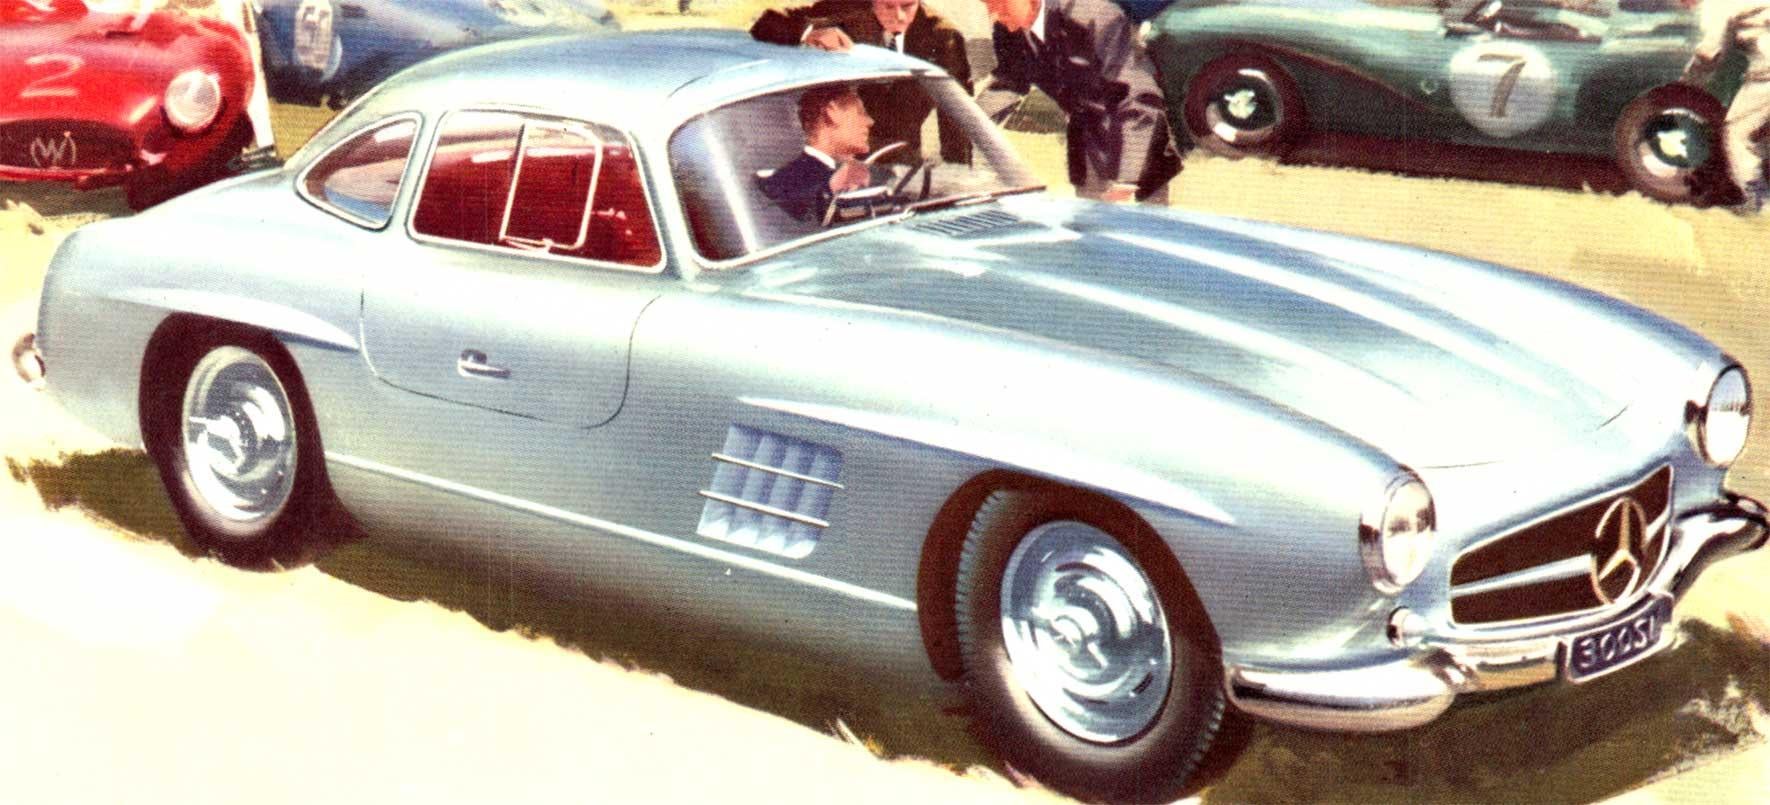 Original Mercedes-Benz Typ 300-SL.   Leineneinband, Querformat, guter Zustand.

Dies ist ein originaler kleinformatiger Mercedes 300 SL Sportwagen-Druck von 1958. Es wurde archivgerecht auf Leinen aufgezogen.   Guter Zustand, bereit zum